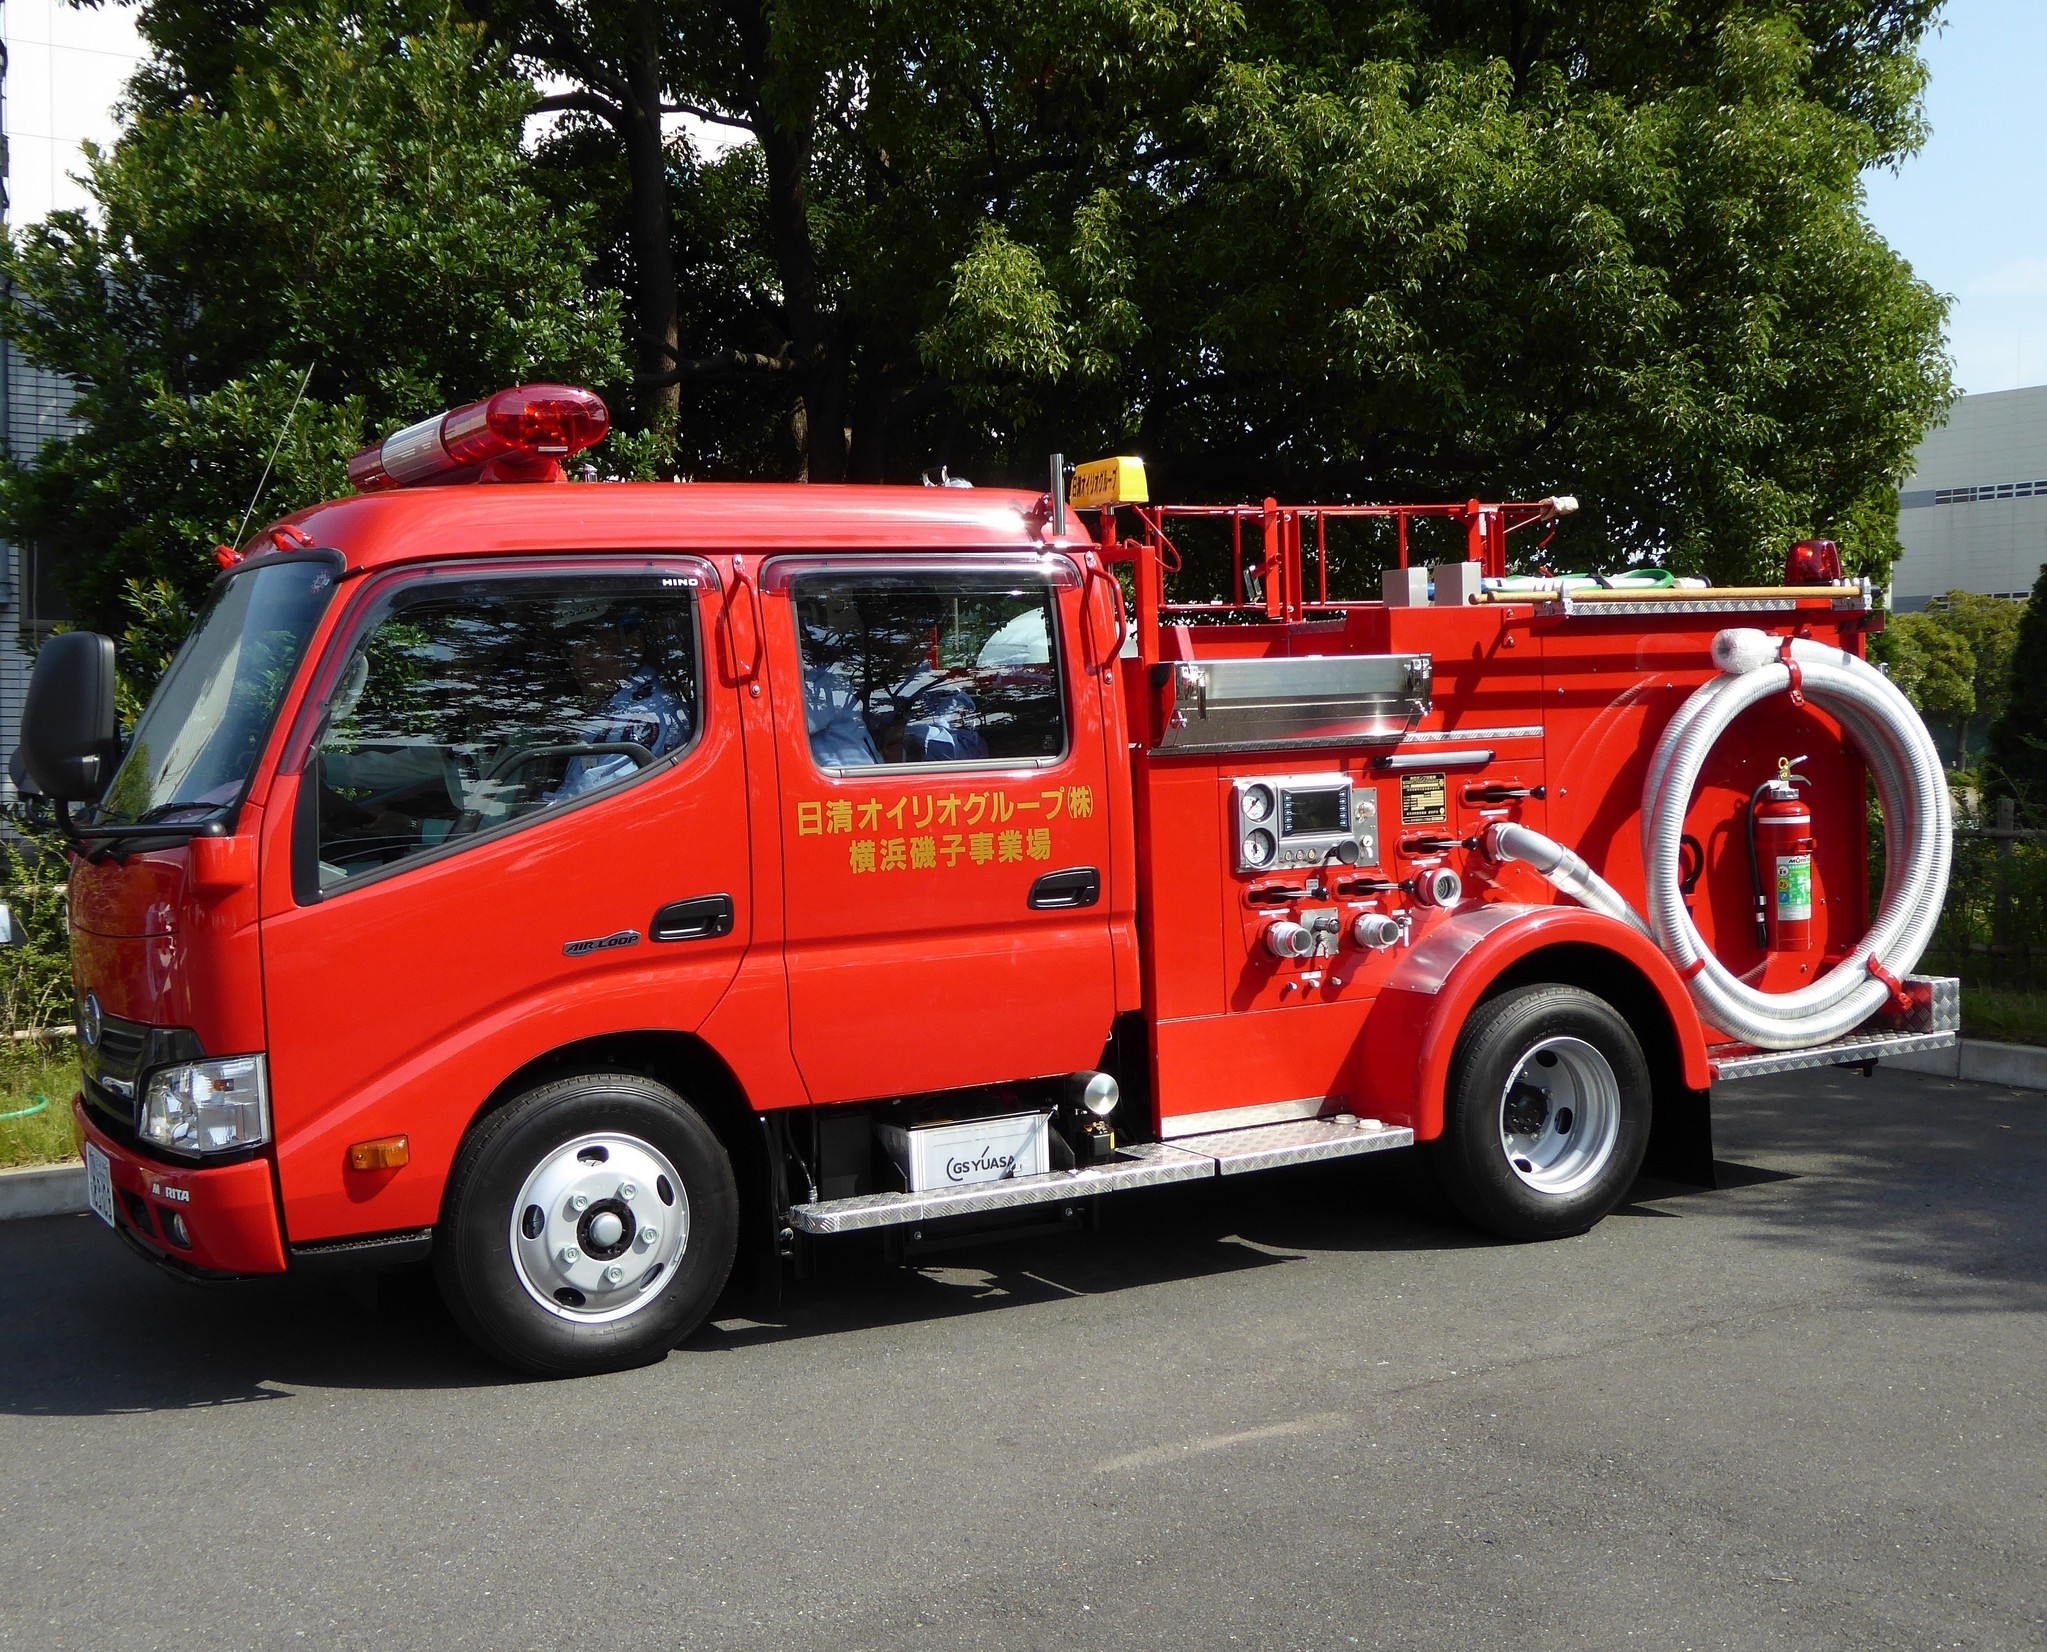 消防車に初導入 日清オイリオの消防車にて ユーグレナバイオディーゼル燃料を使用開始 株式会社ユーグレナのプレスリリース